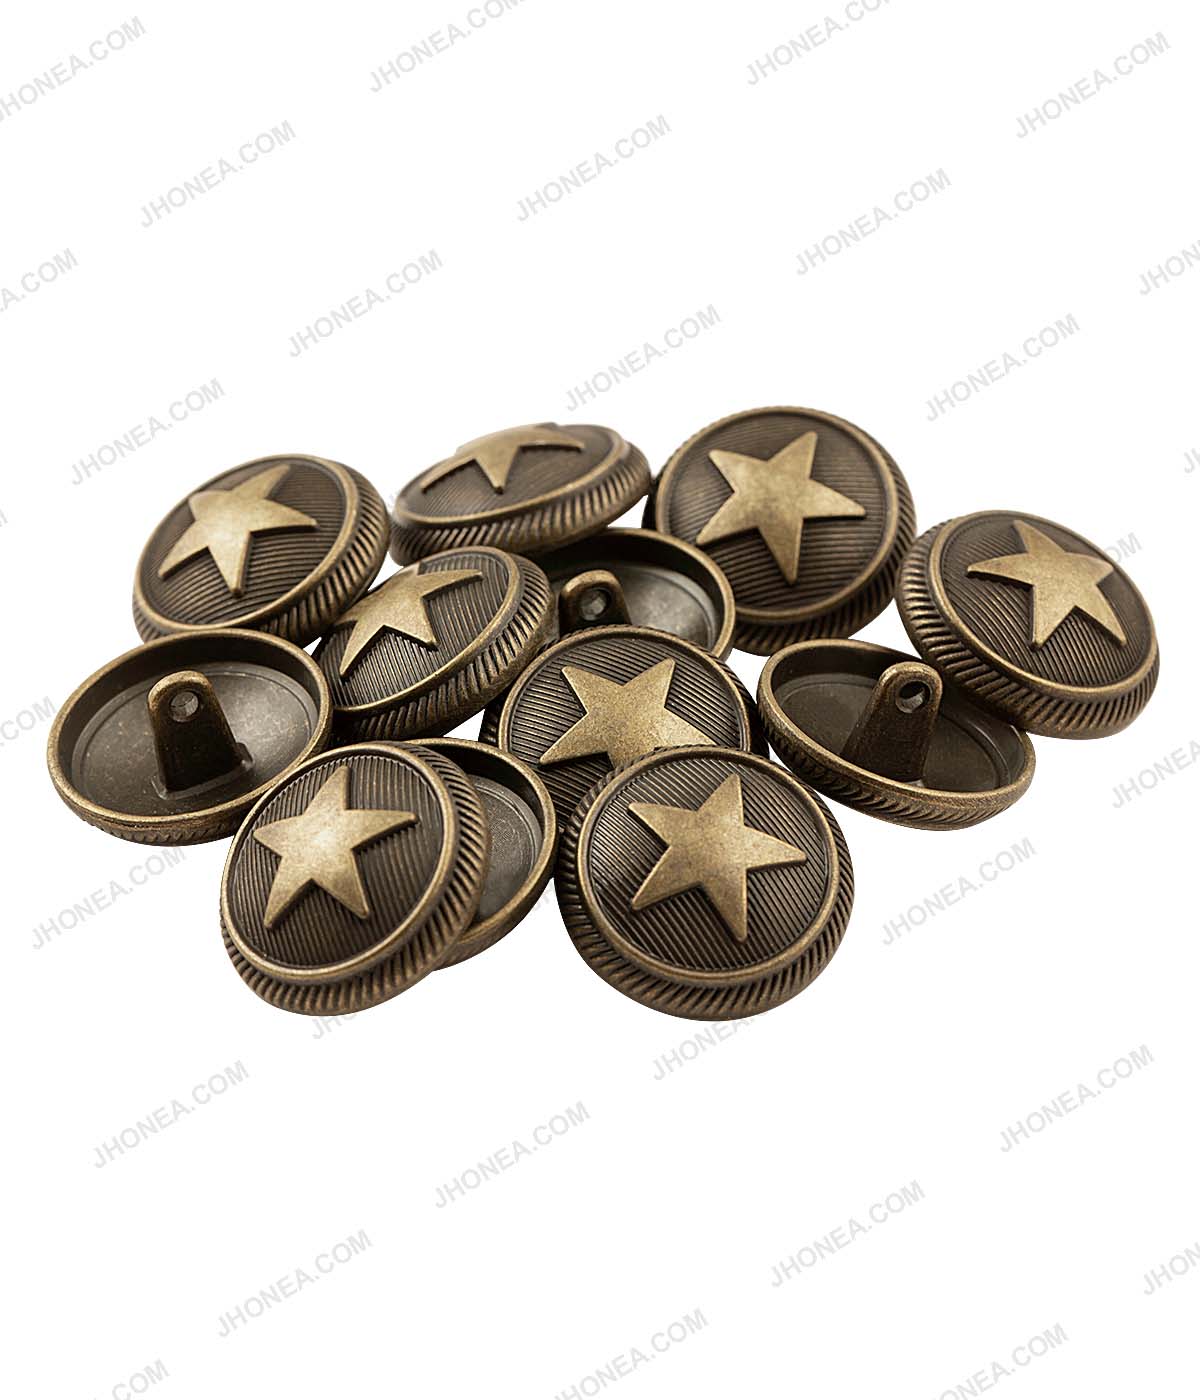 Antique Brass Star Design Metal Shank Buttons for Coats